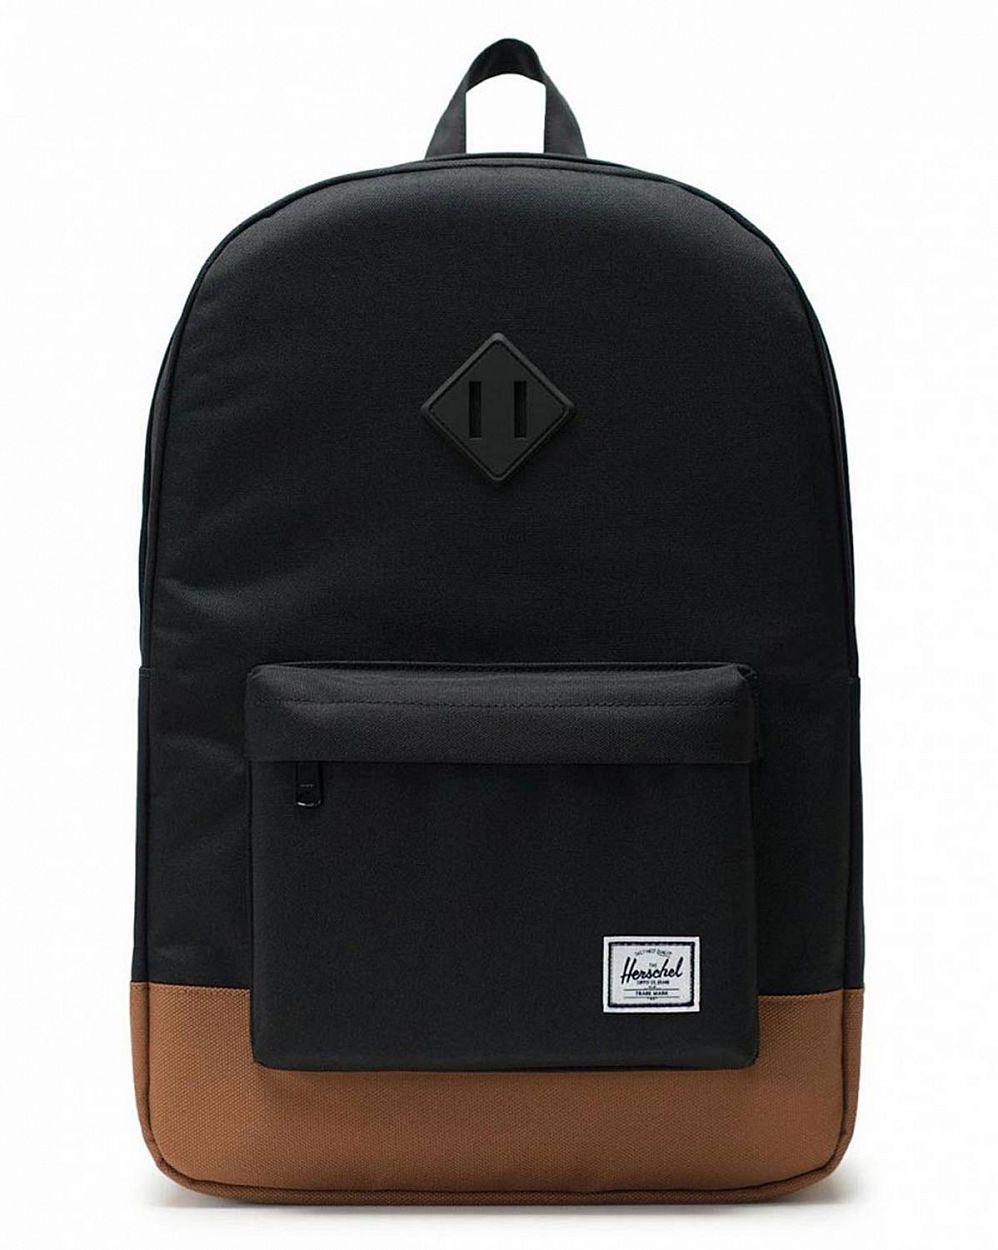 Рюкзак водоотталкивающий с карманом для 15 ноутбука Herschel Heritage Black Saddle отзывы